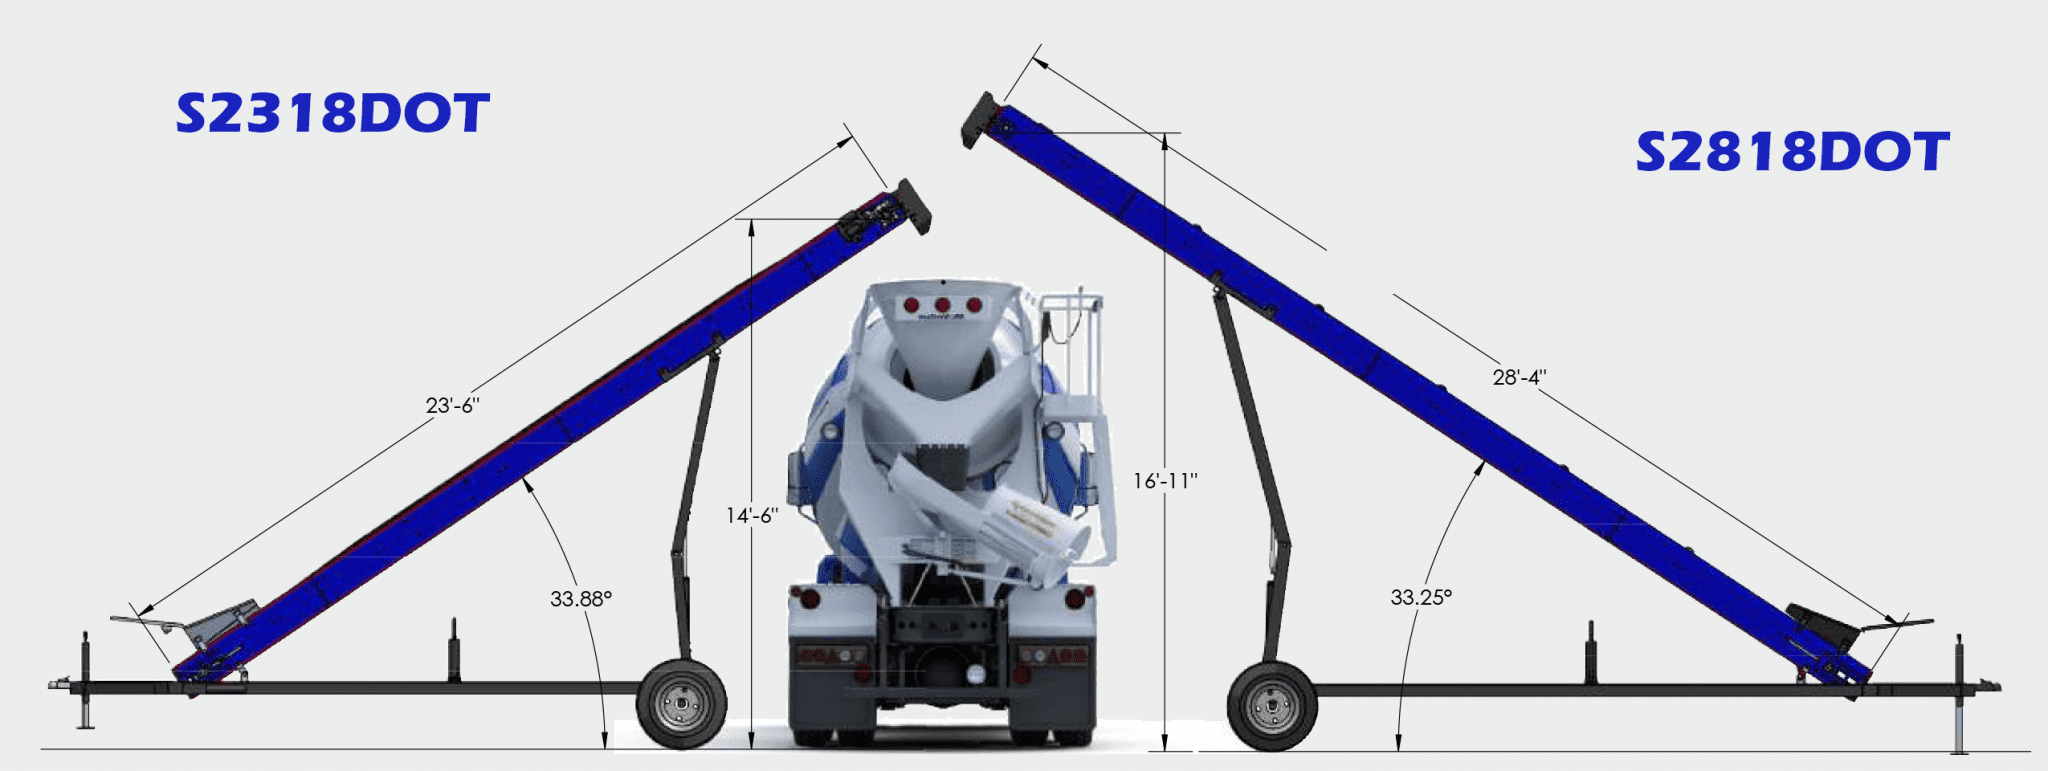 Mixer Truck Dimensions Blue 2048x771 1 28' Conveyor - Senya S2818